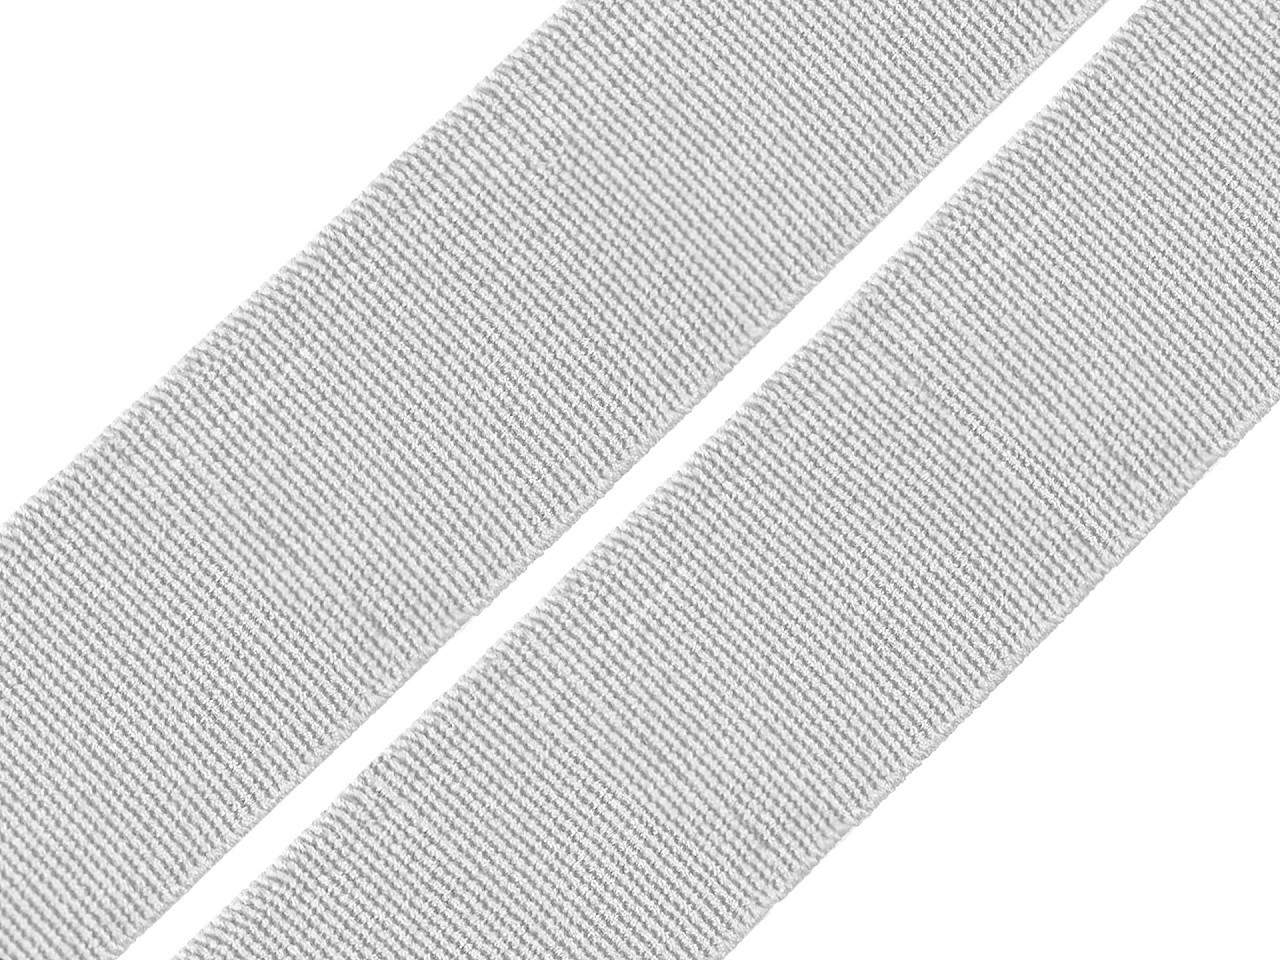 Pruženka hladká šíře 20 mm tkaná barevná, barva 1006 šedá nejsvětlější